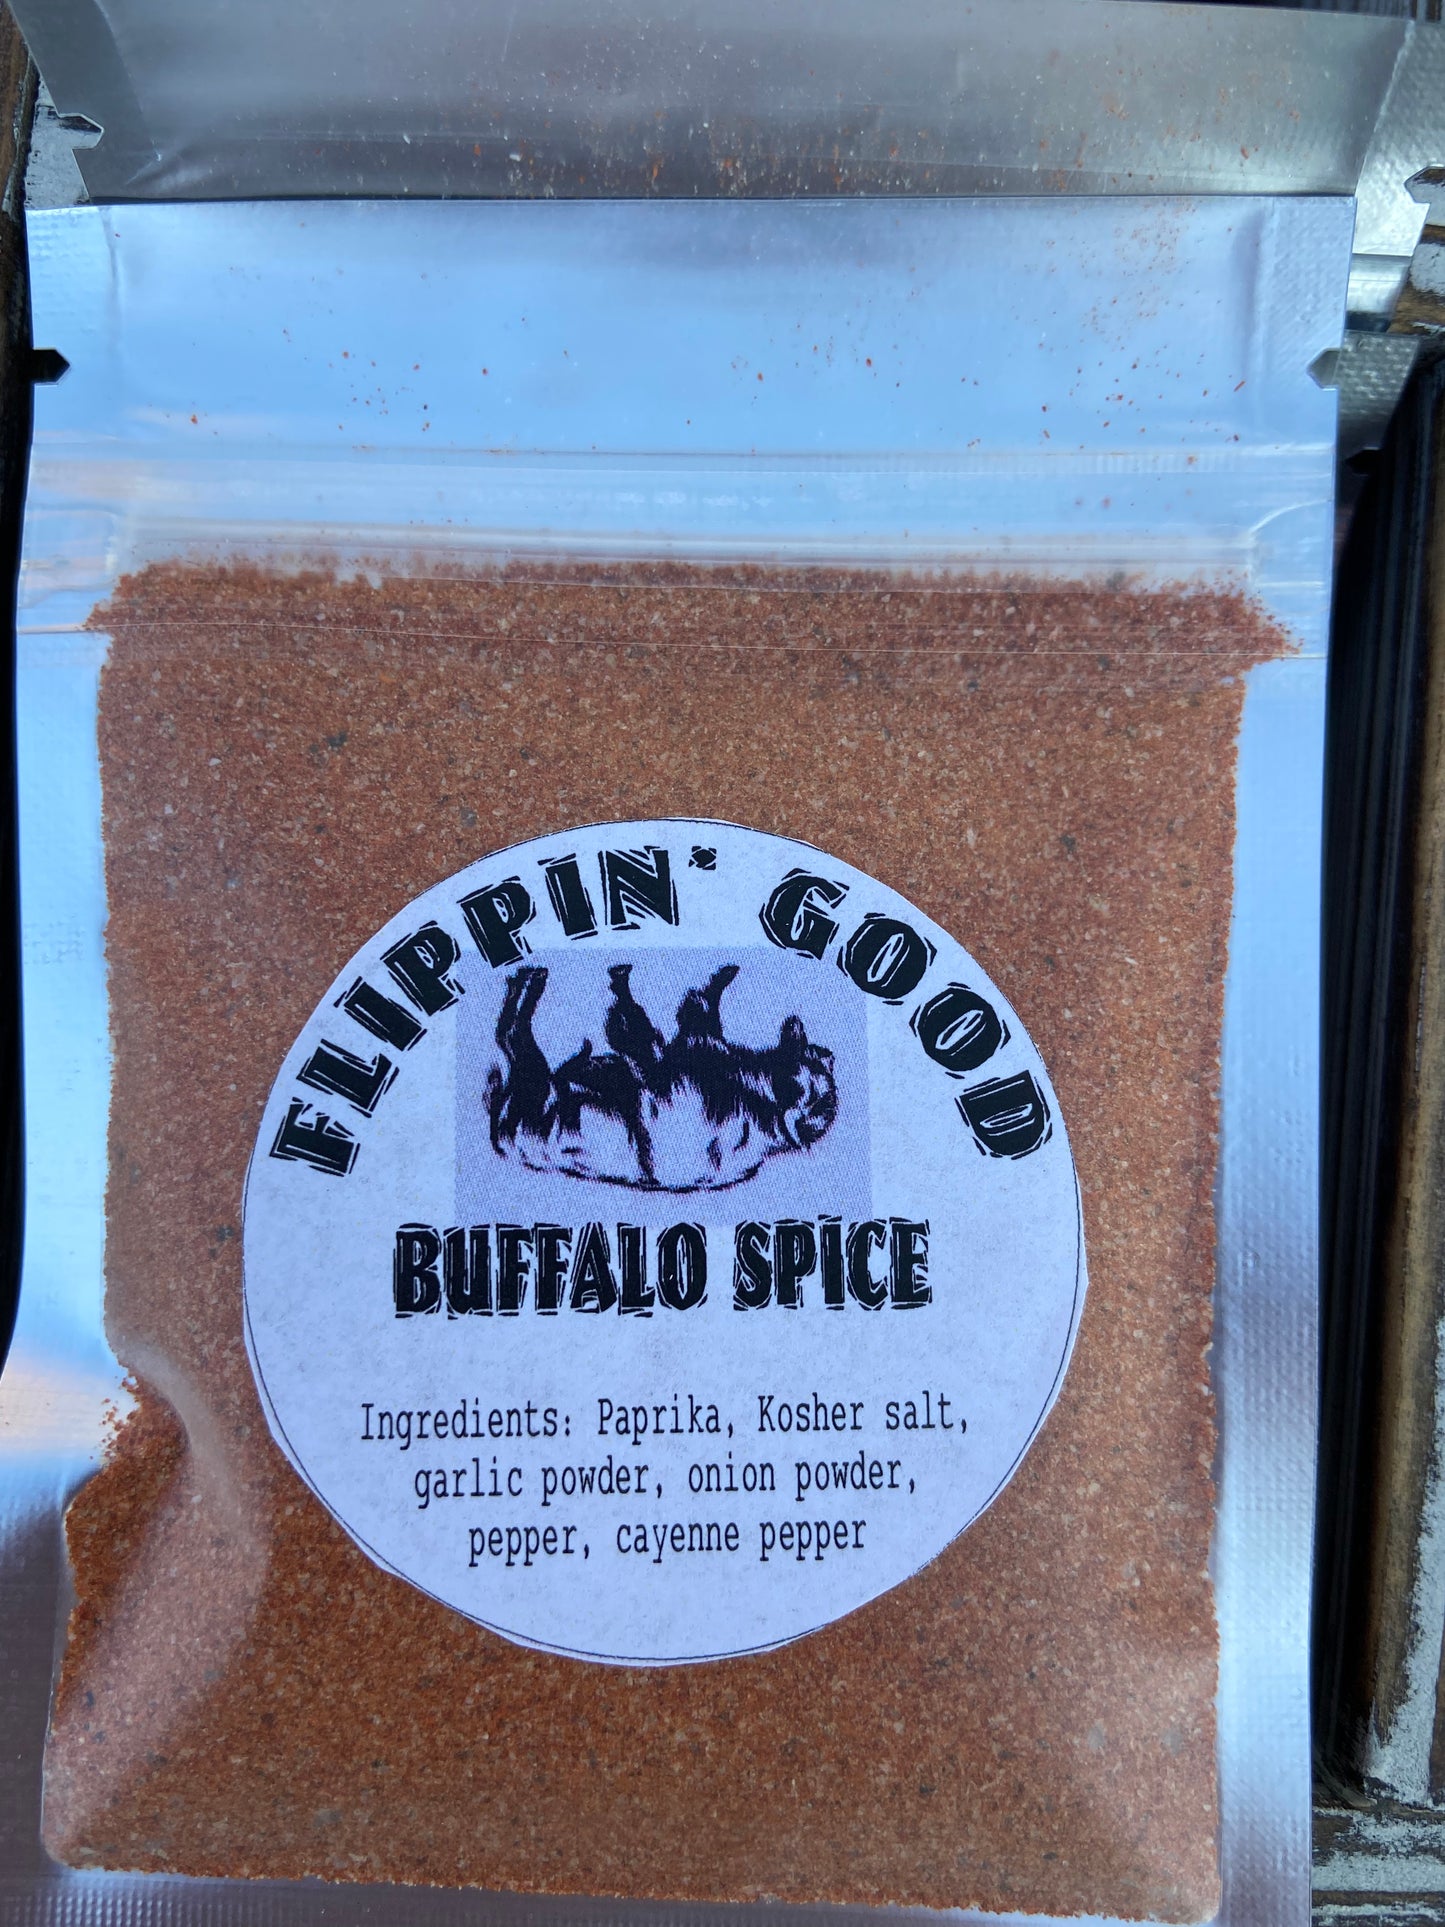 FLIPPIN GOOD Buffalo spice